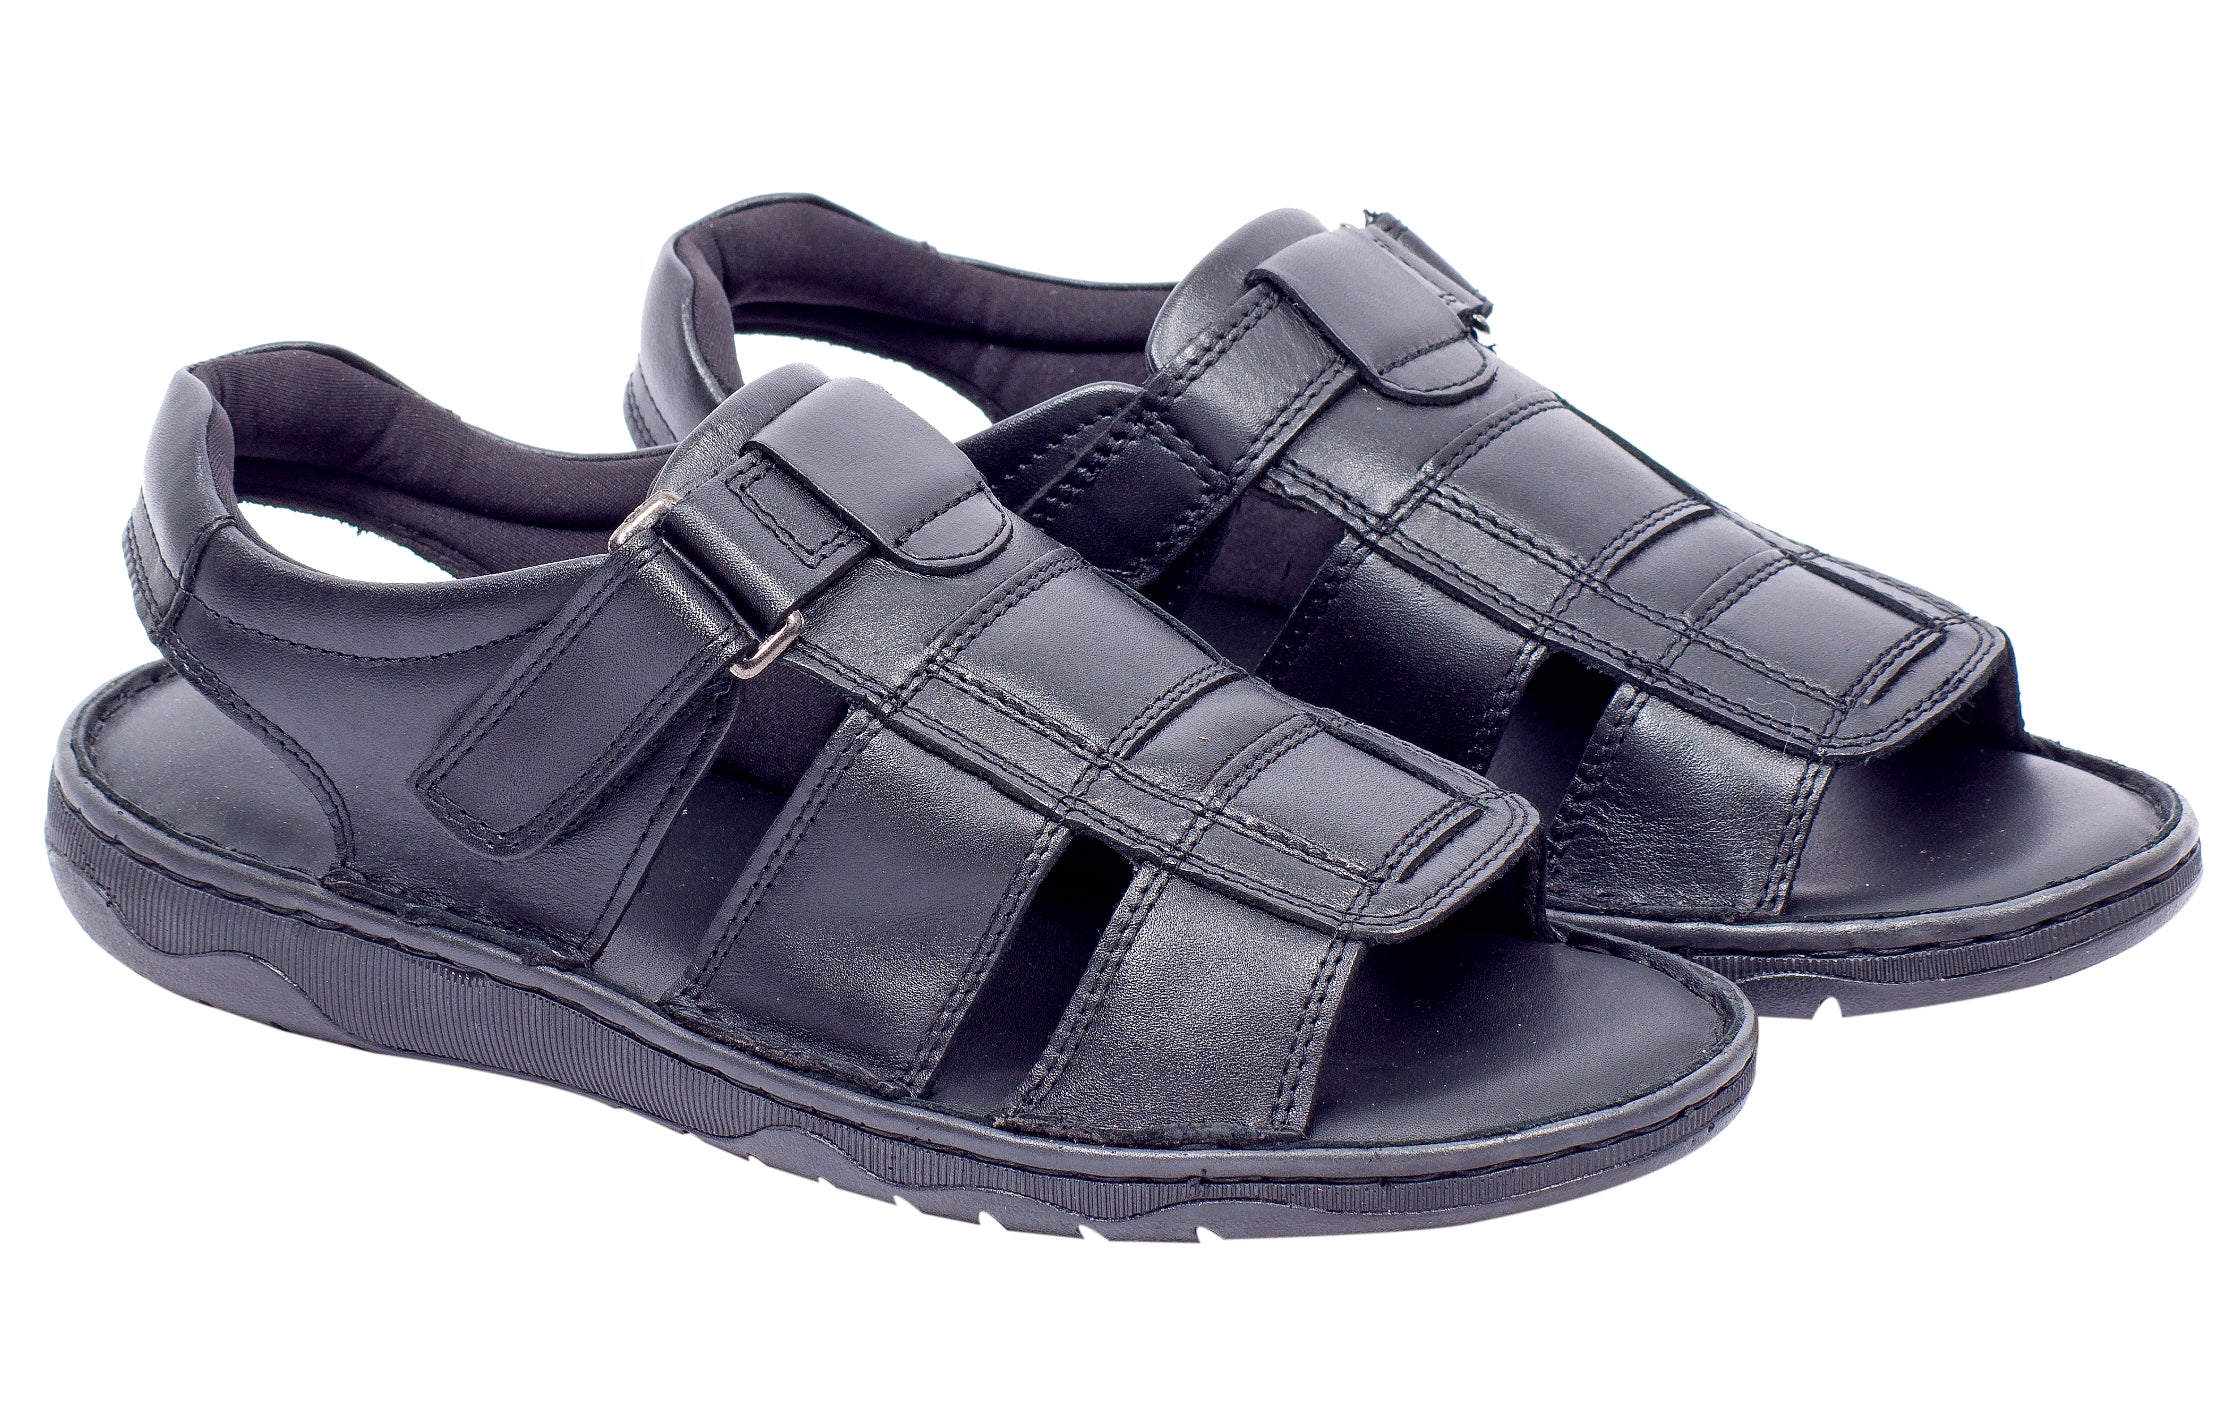 Mens leather sandal 993222 – SREELEATHERS